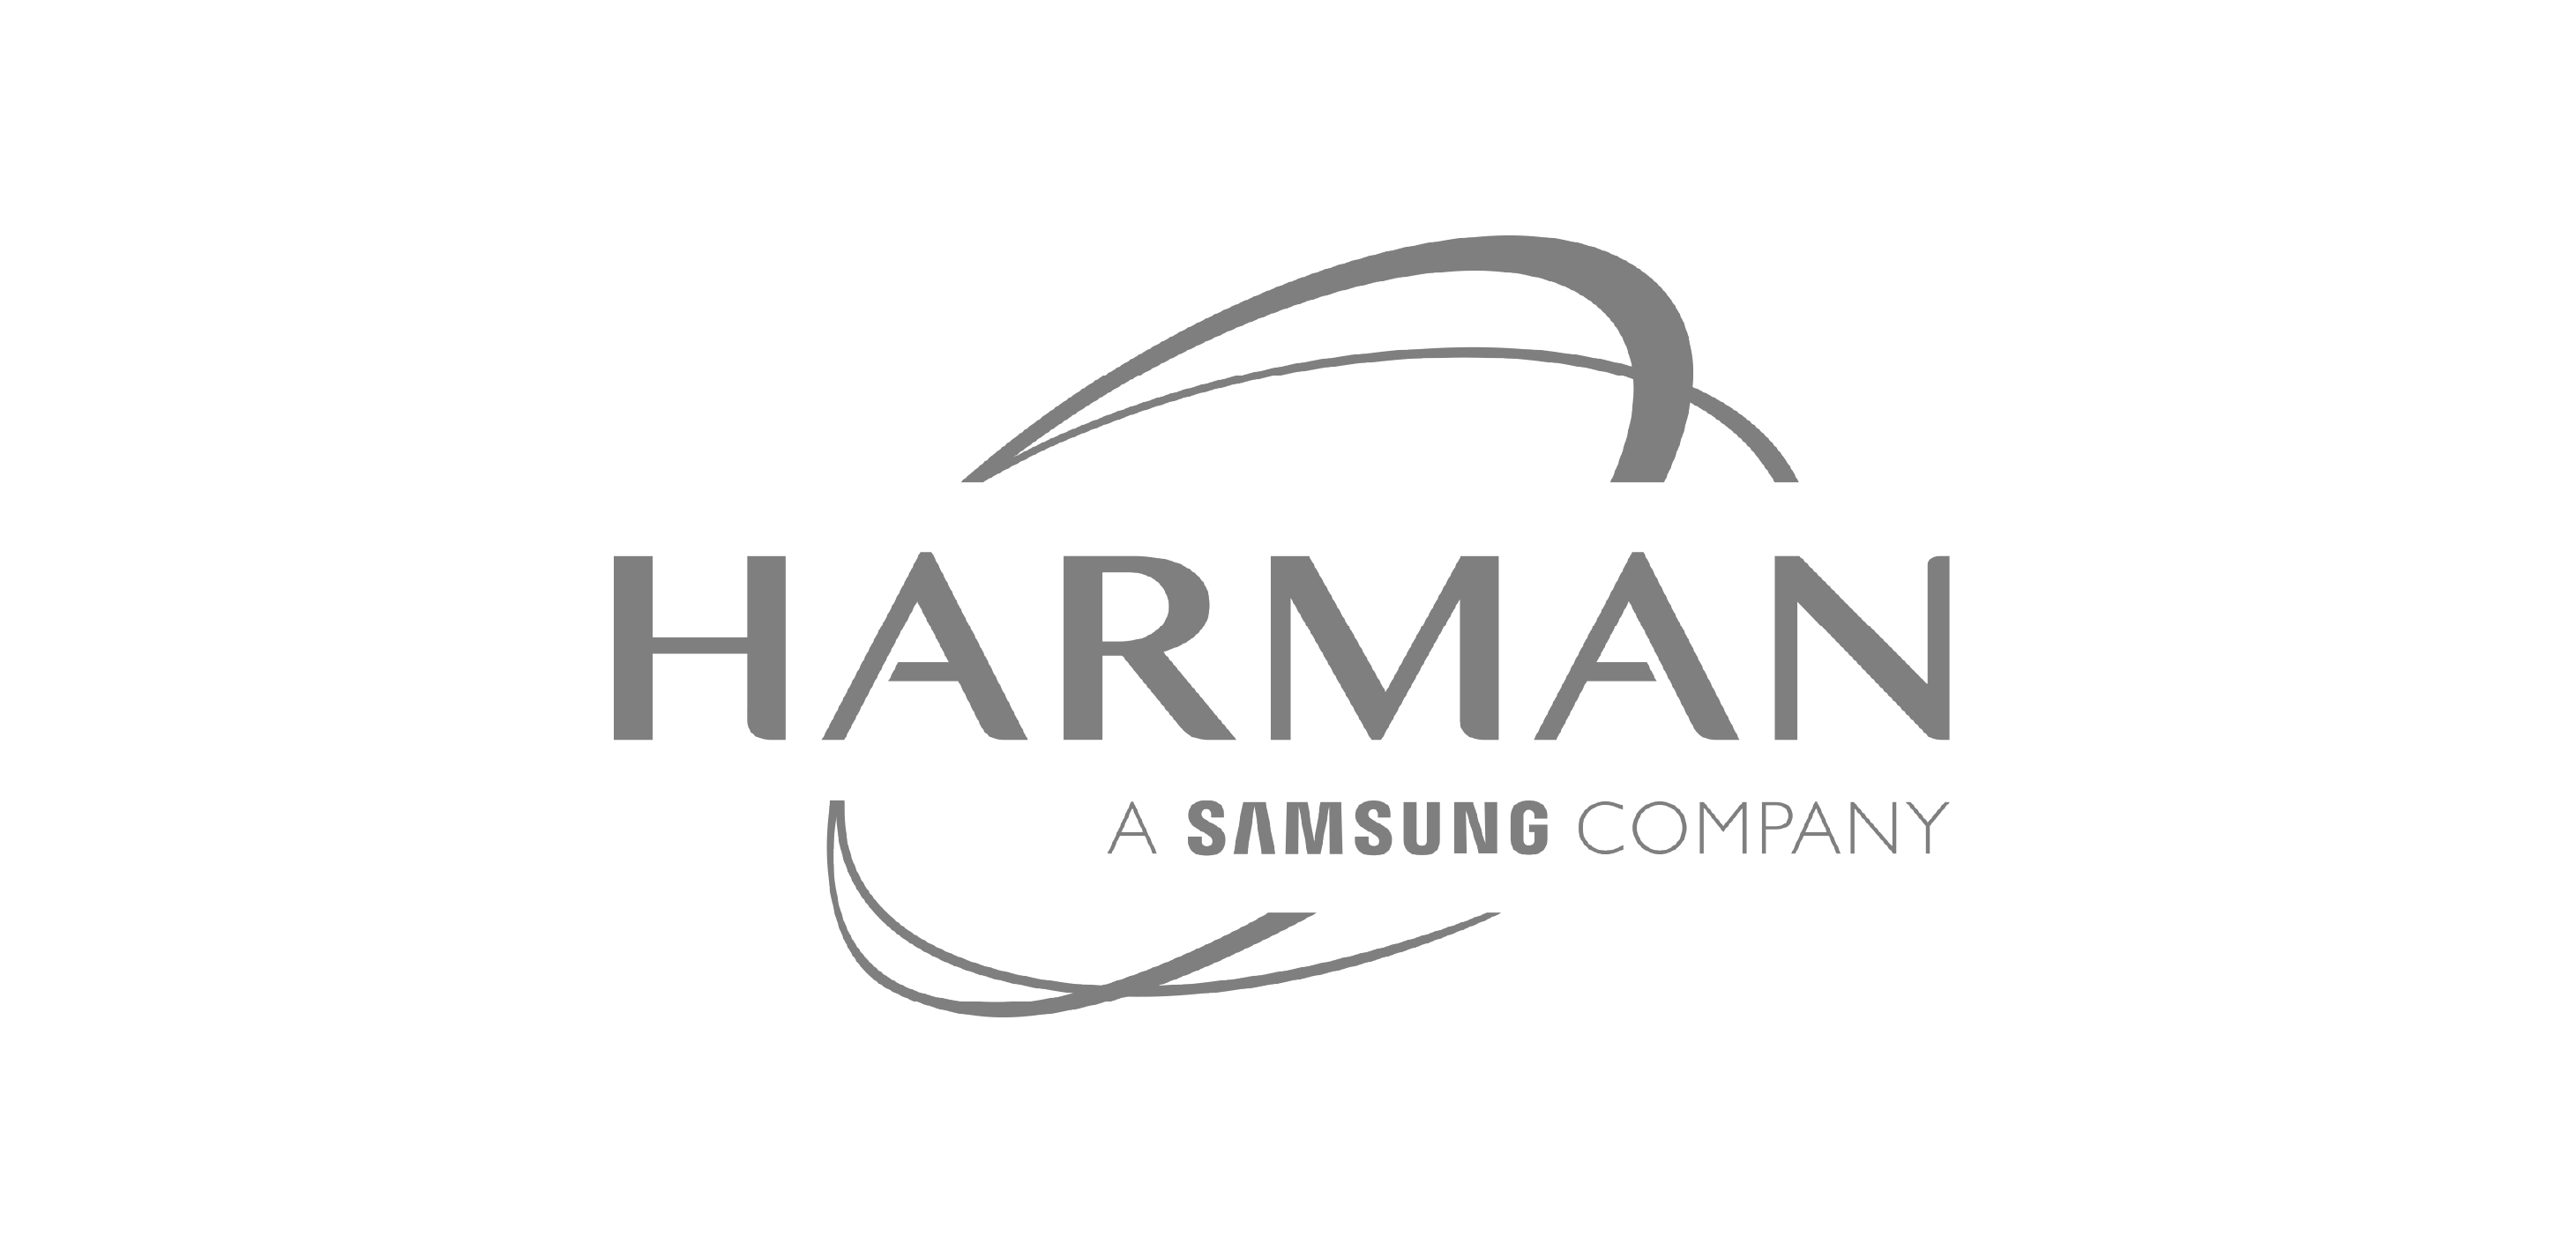 Harman a Samsung company logo